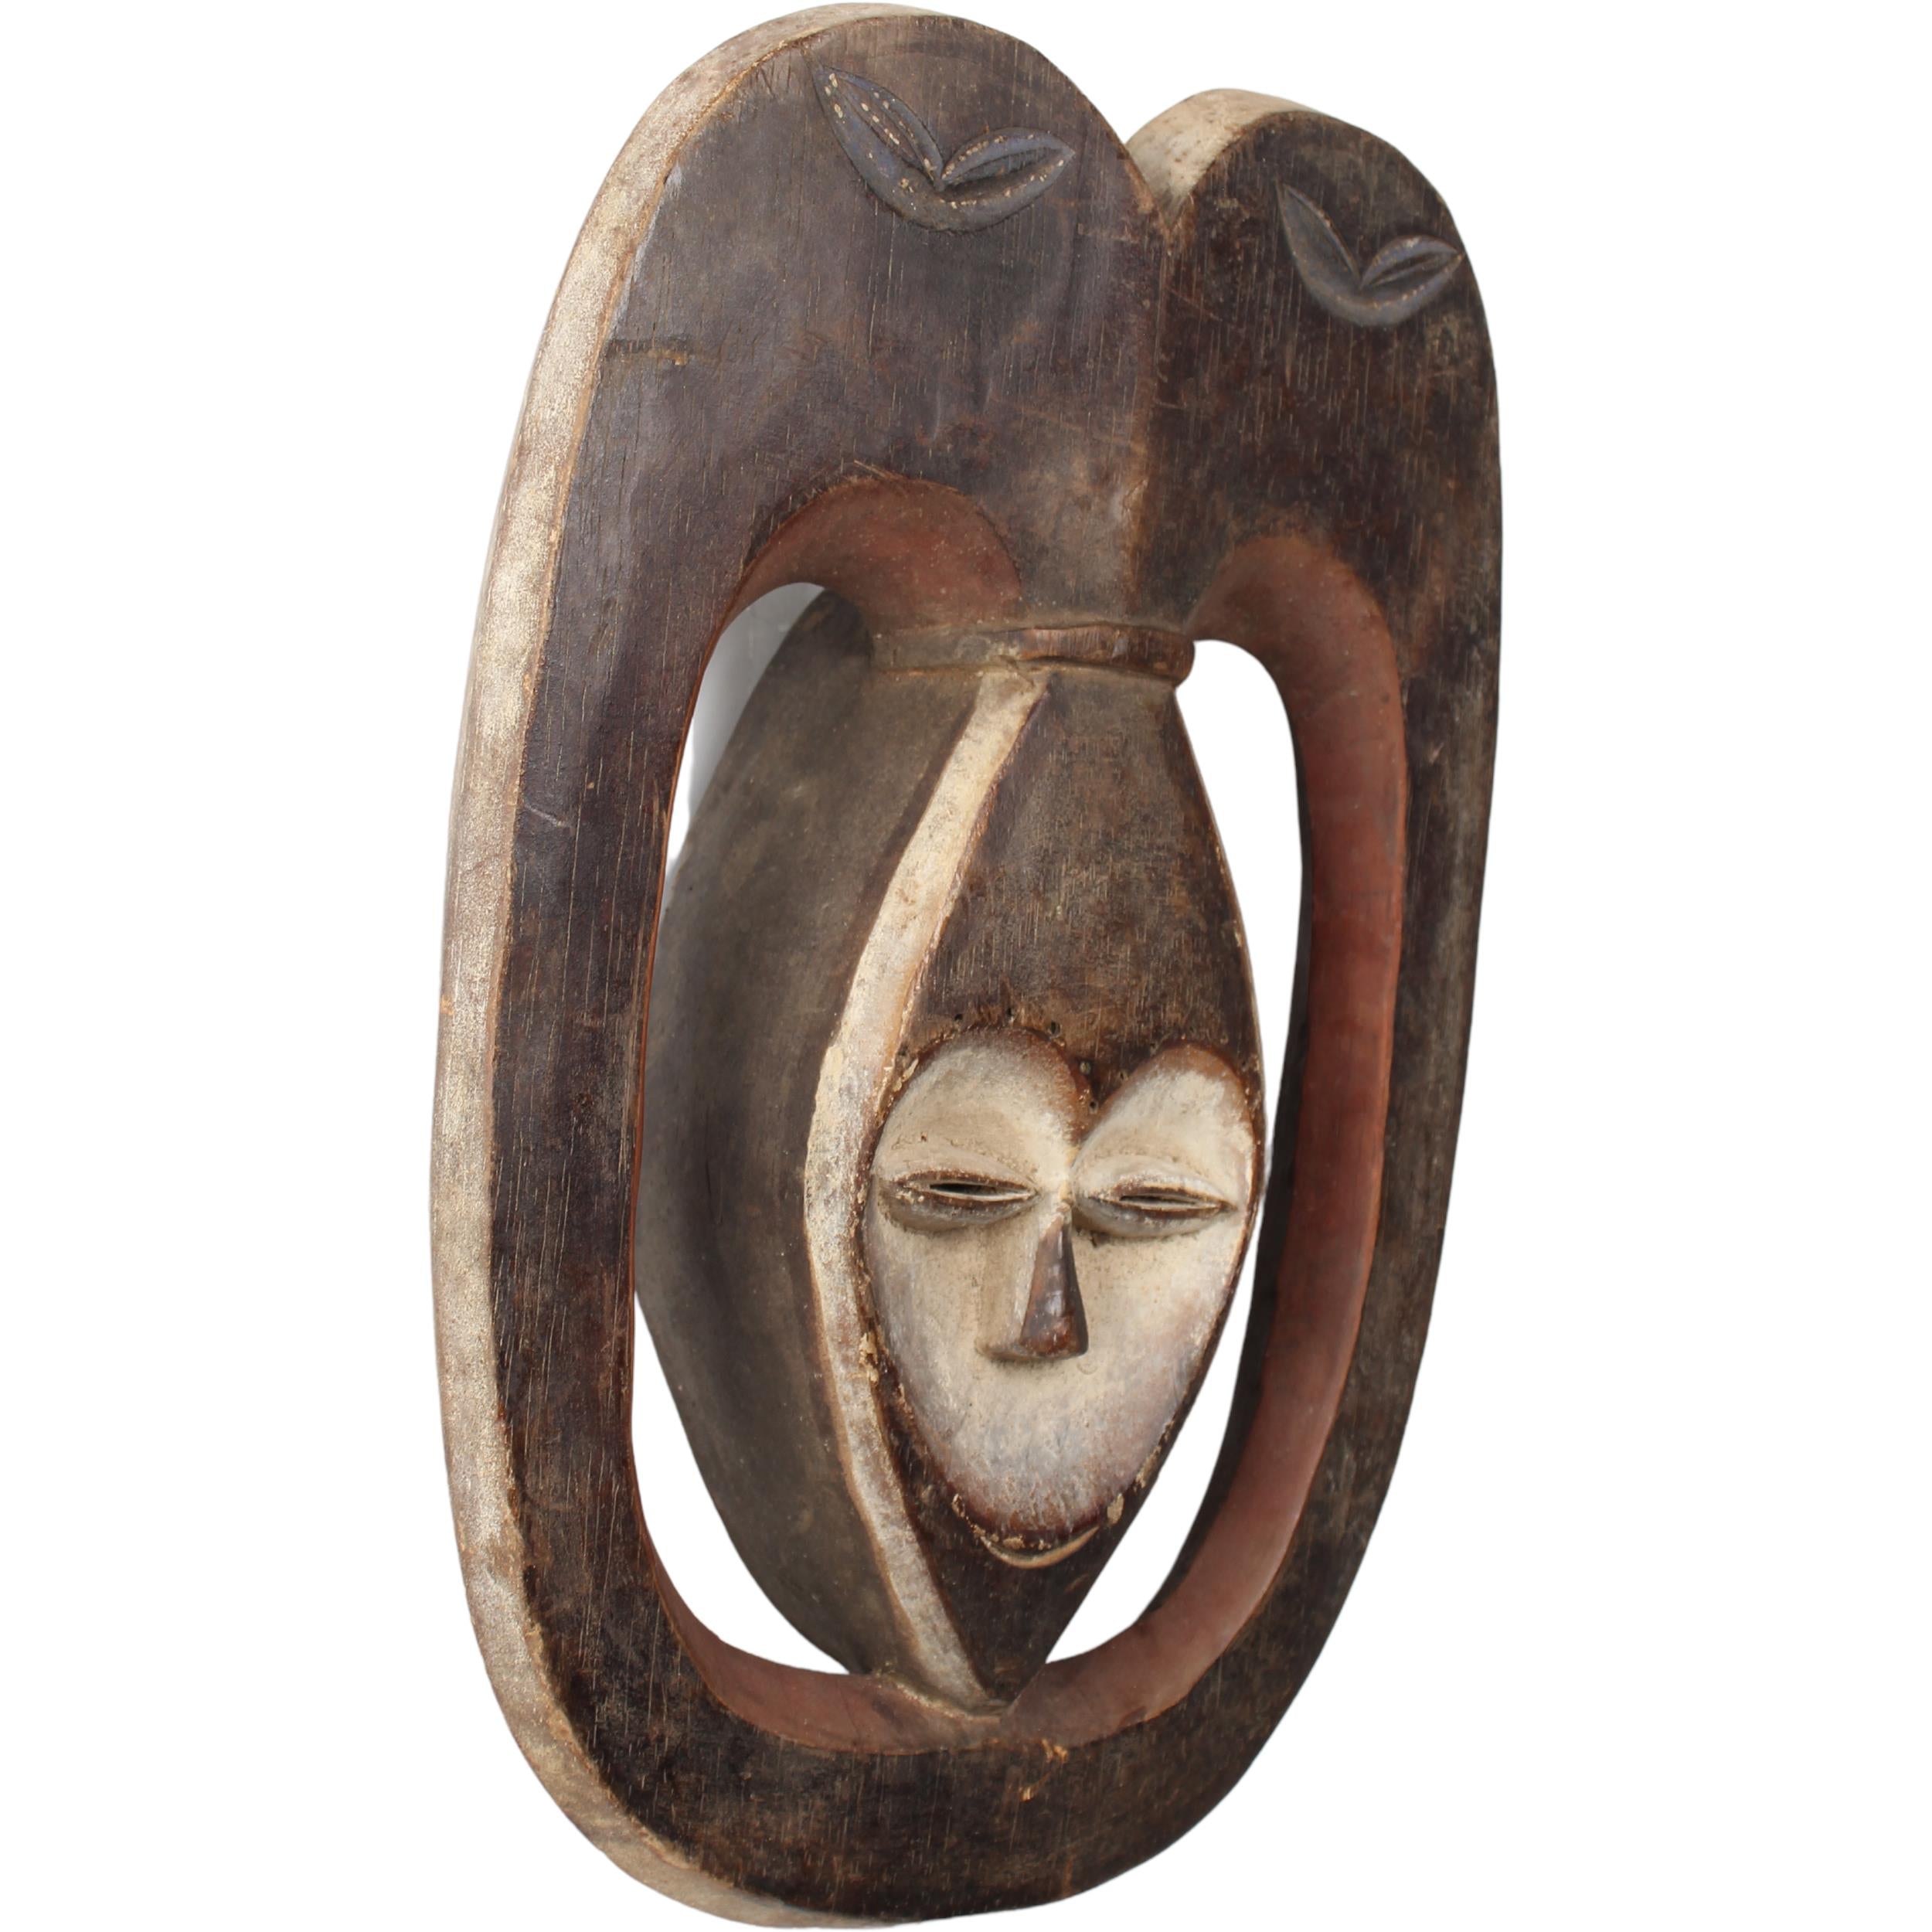 Kwele Tribe Mask ~16.9" Tall - Mask